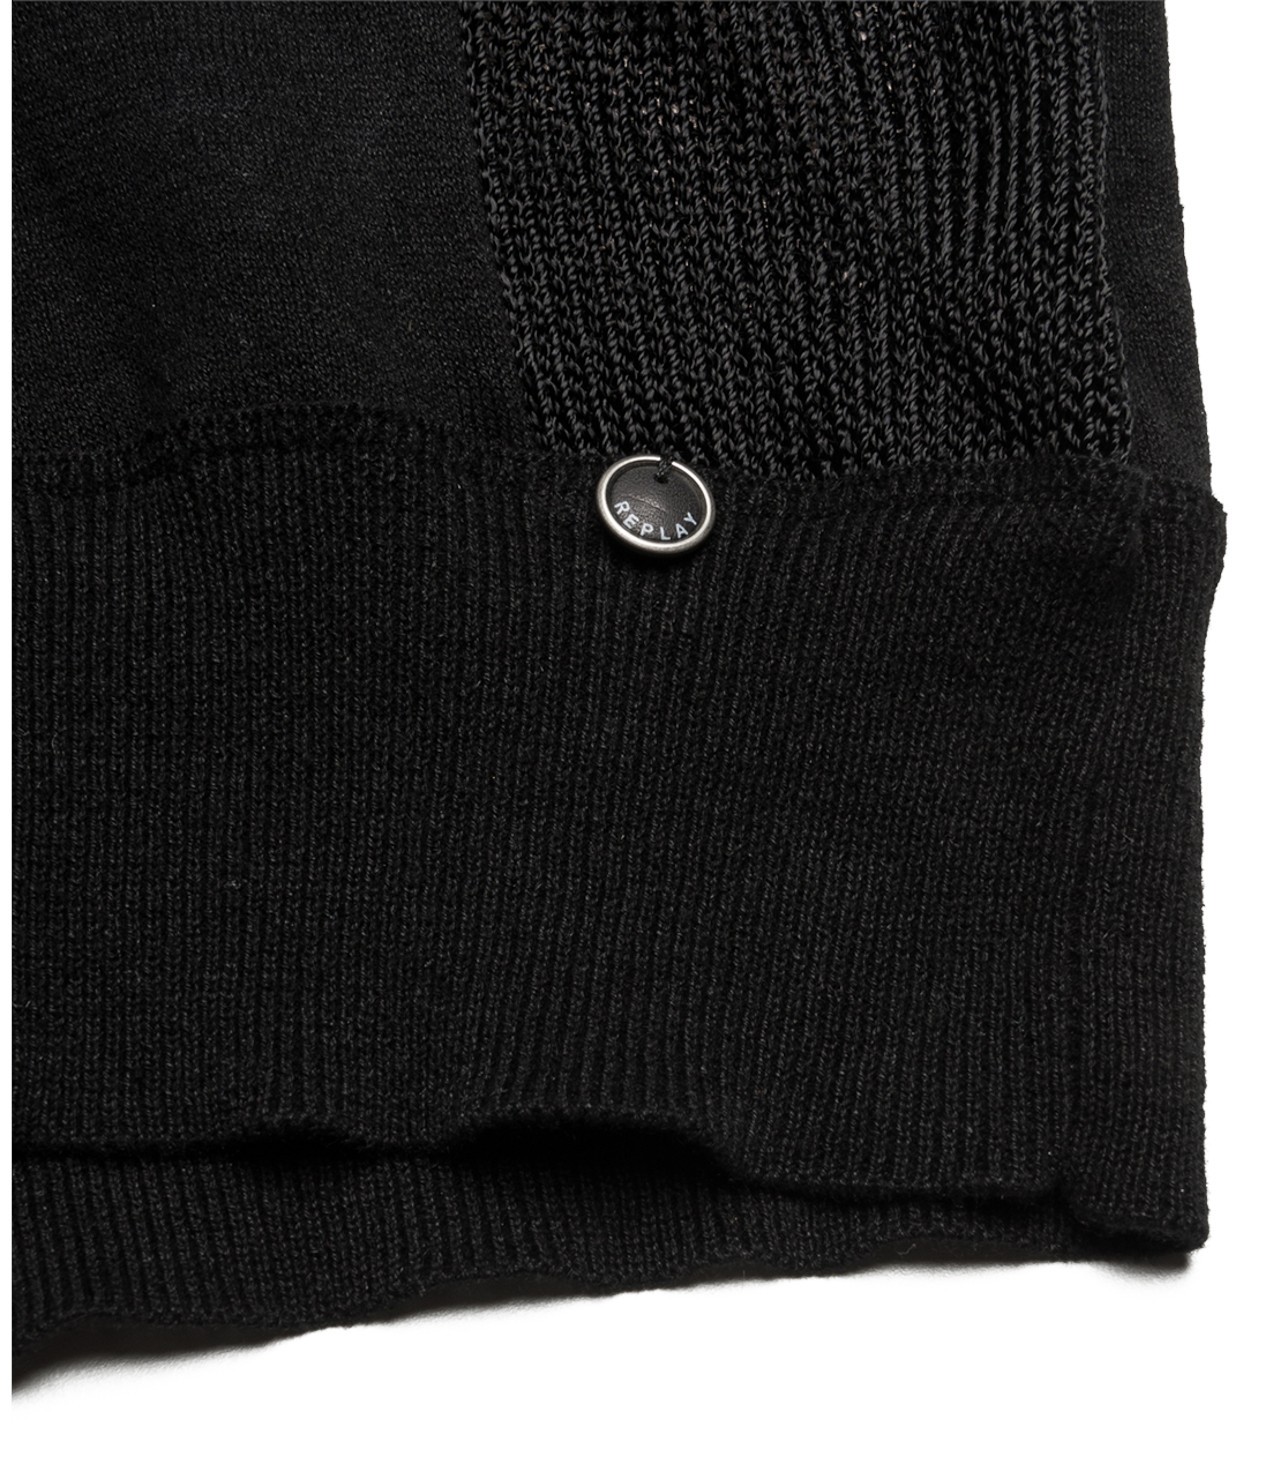 Replay női fekete pamut-lenvászon keverék pulcsi 2015.02.27 #78902 fotója